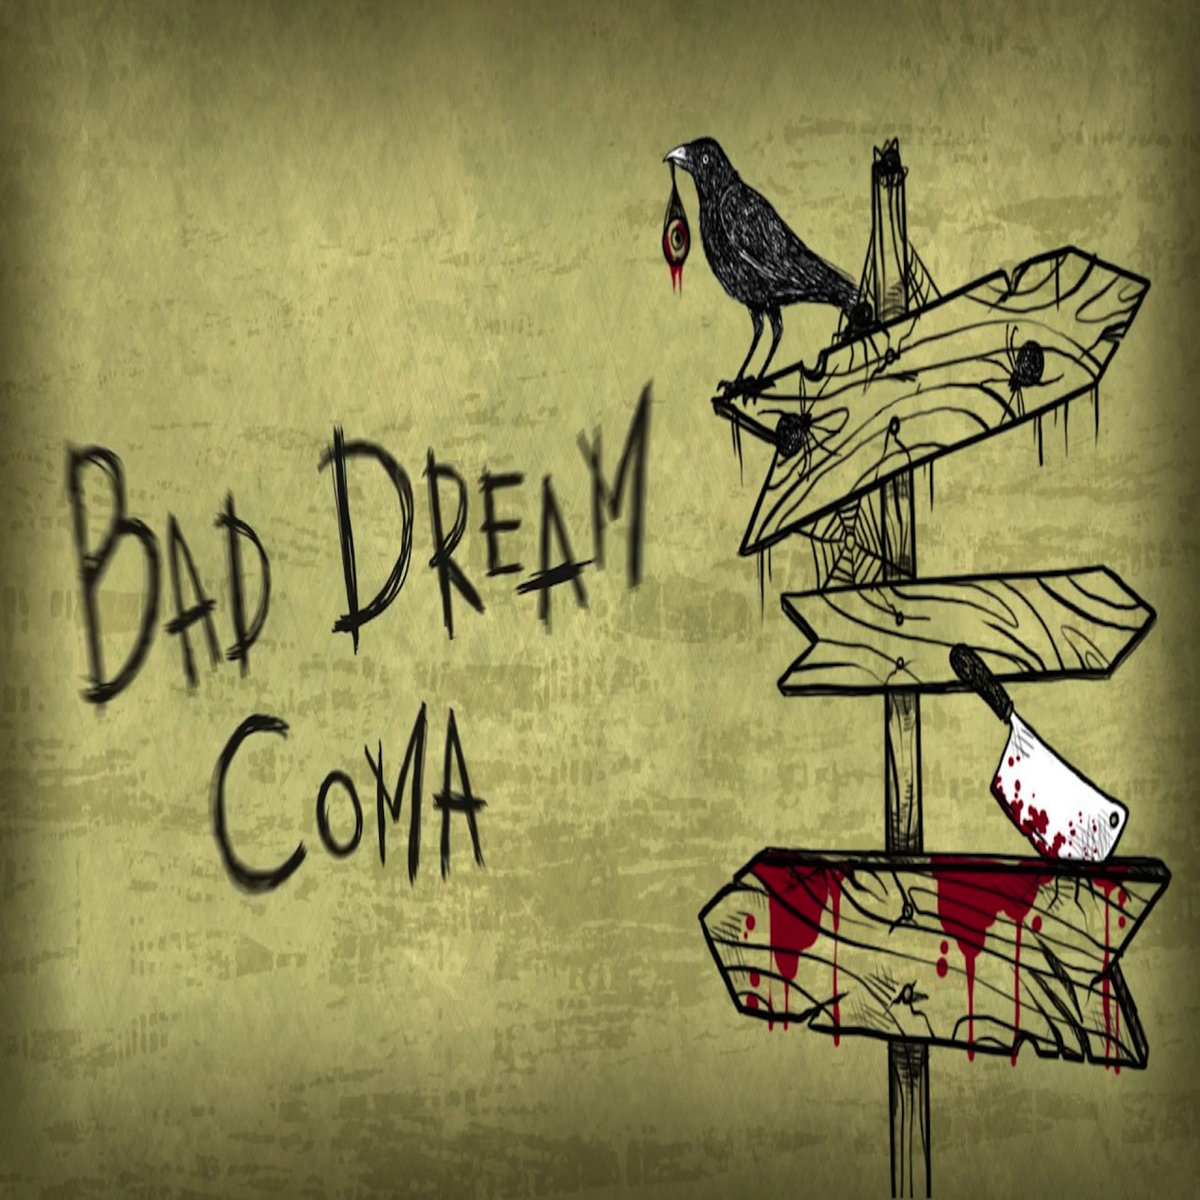 Bad dream coma steam фото 14